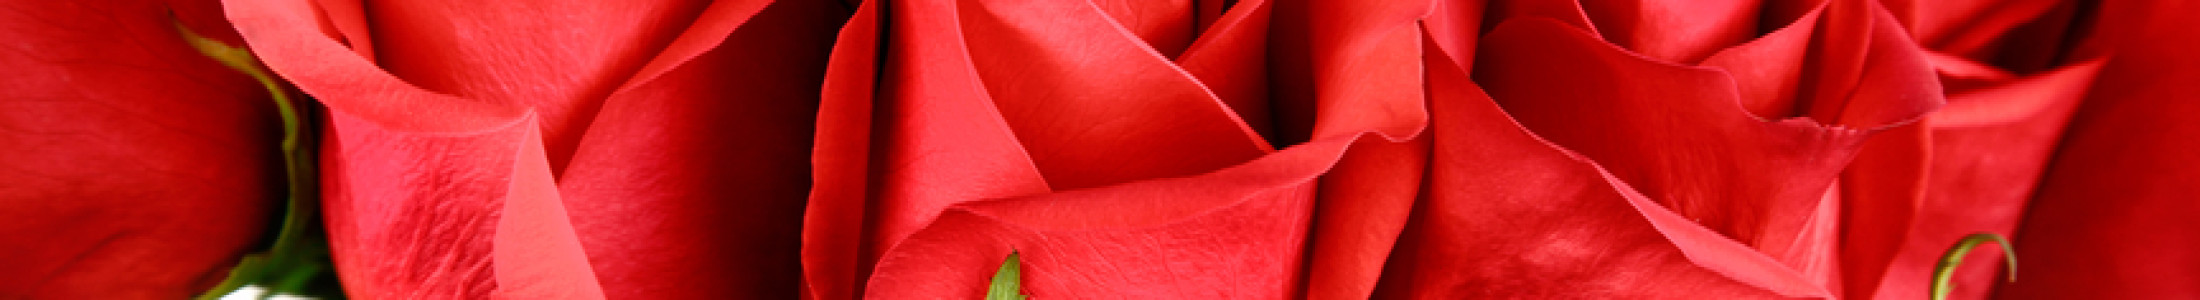 Red Roses - Ecuadorian Red Roses, Atlanta GA Roses, Long Stem Roses ...